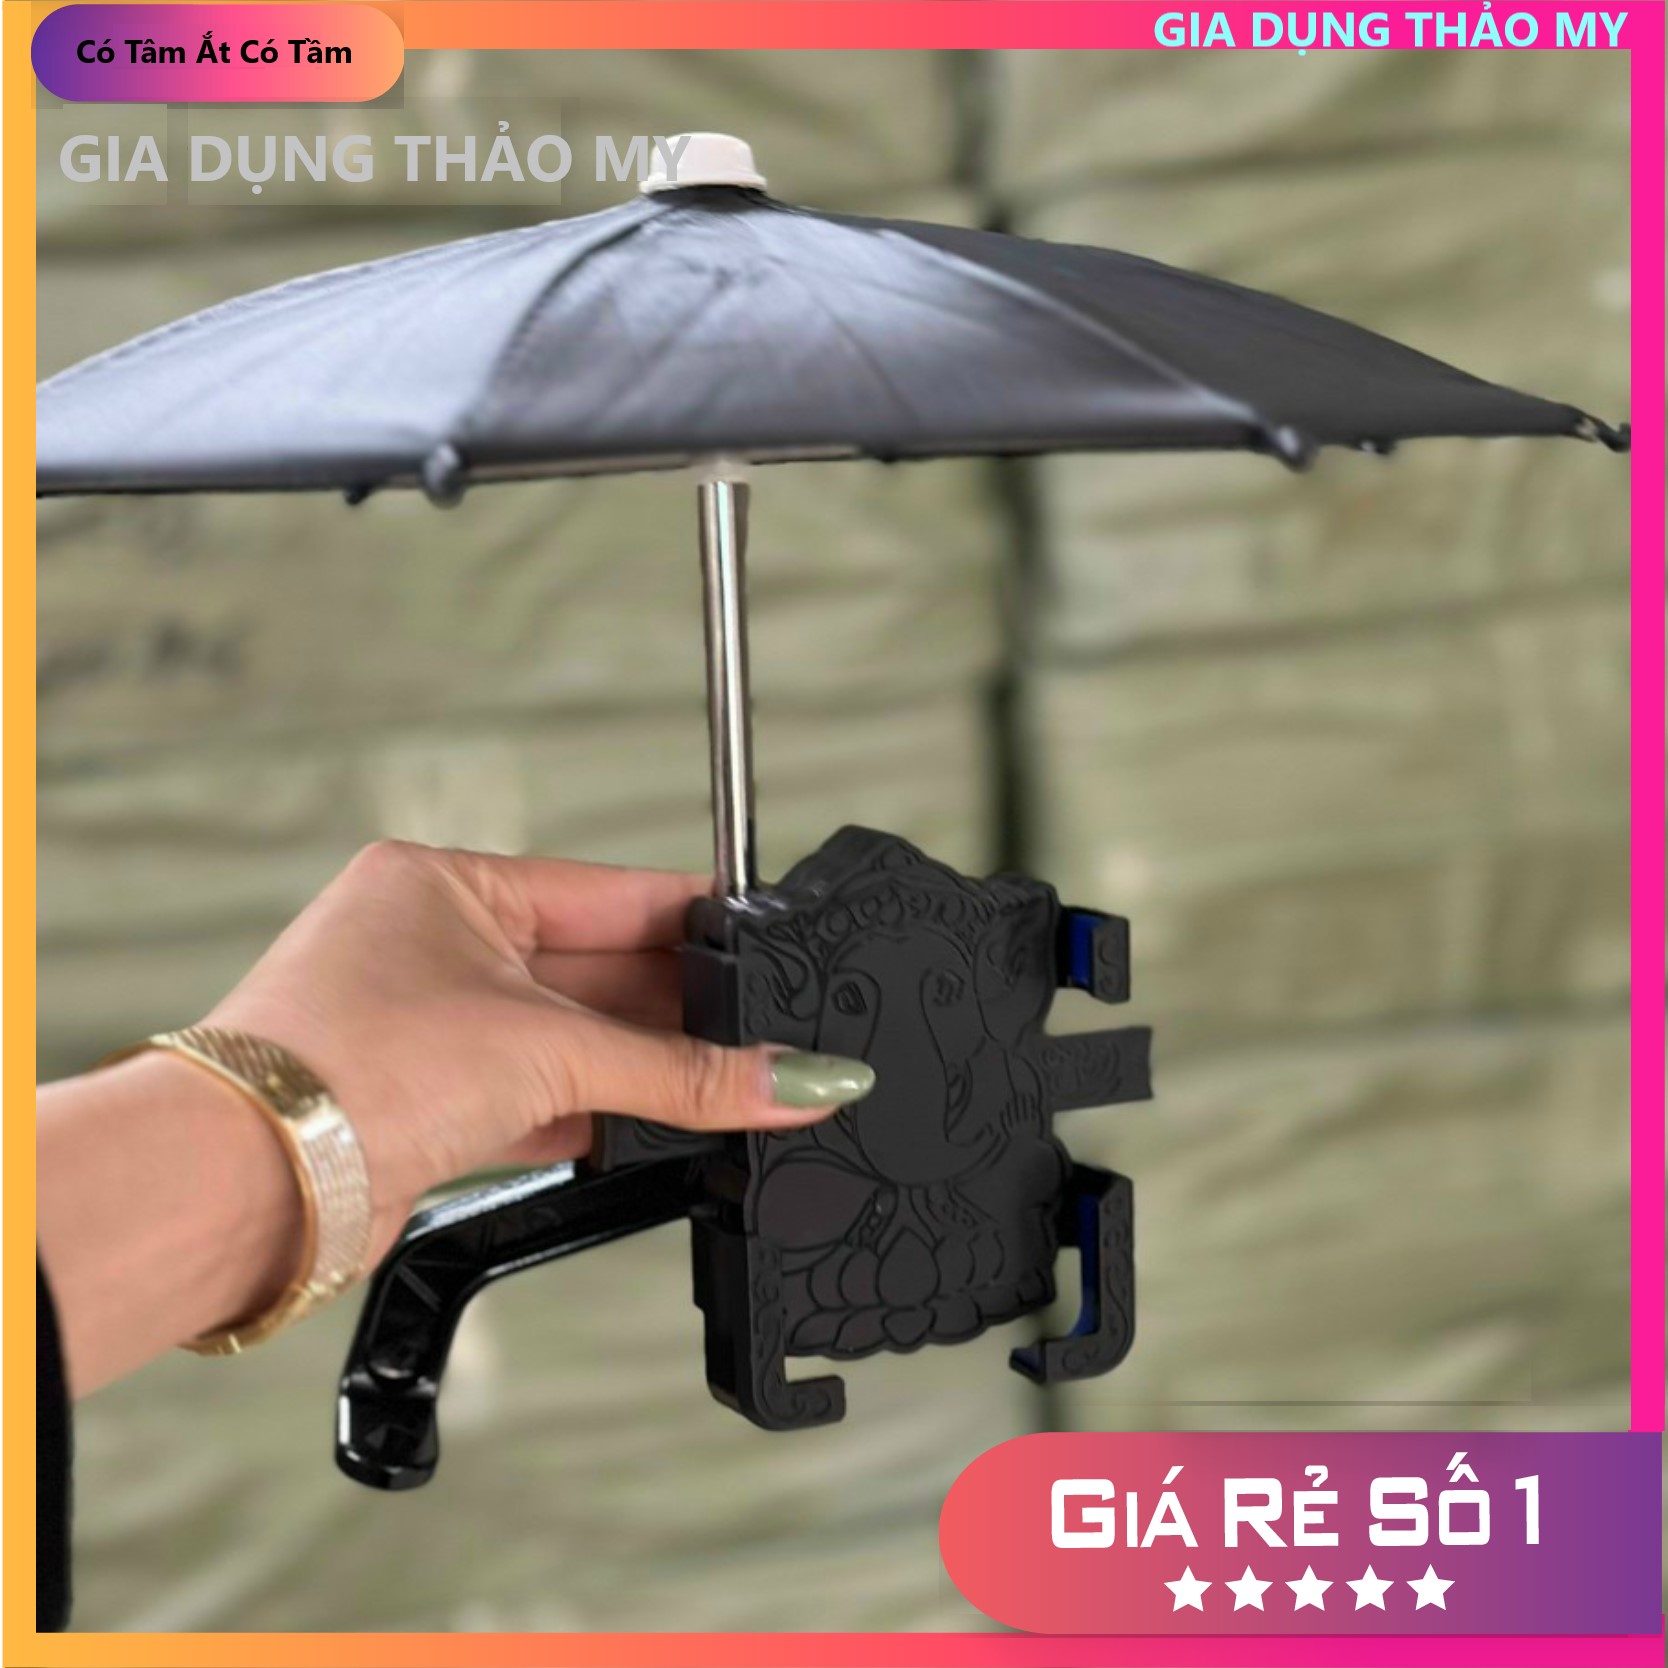 Giá đỡ điện thoại gắn chân gương kèm ô mini chống mưa chống nắng